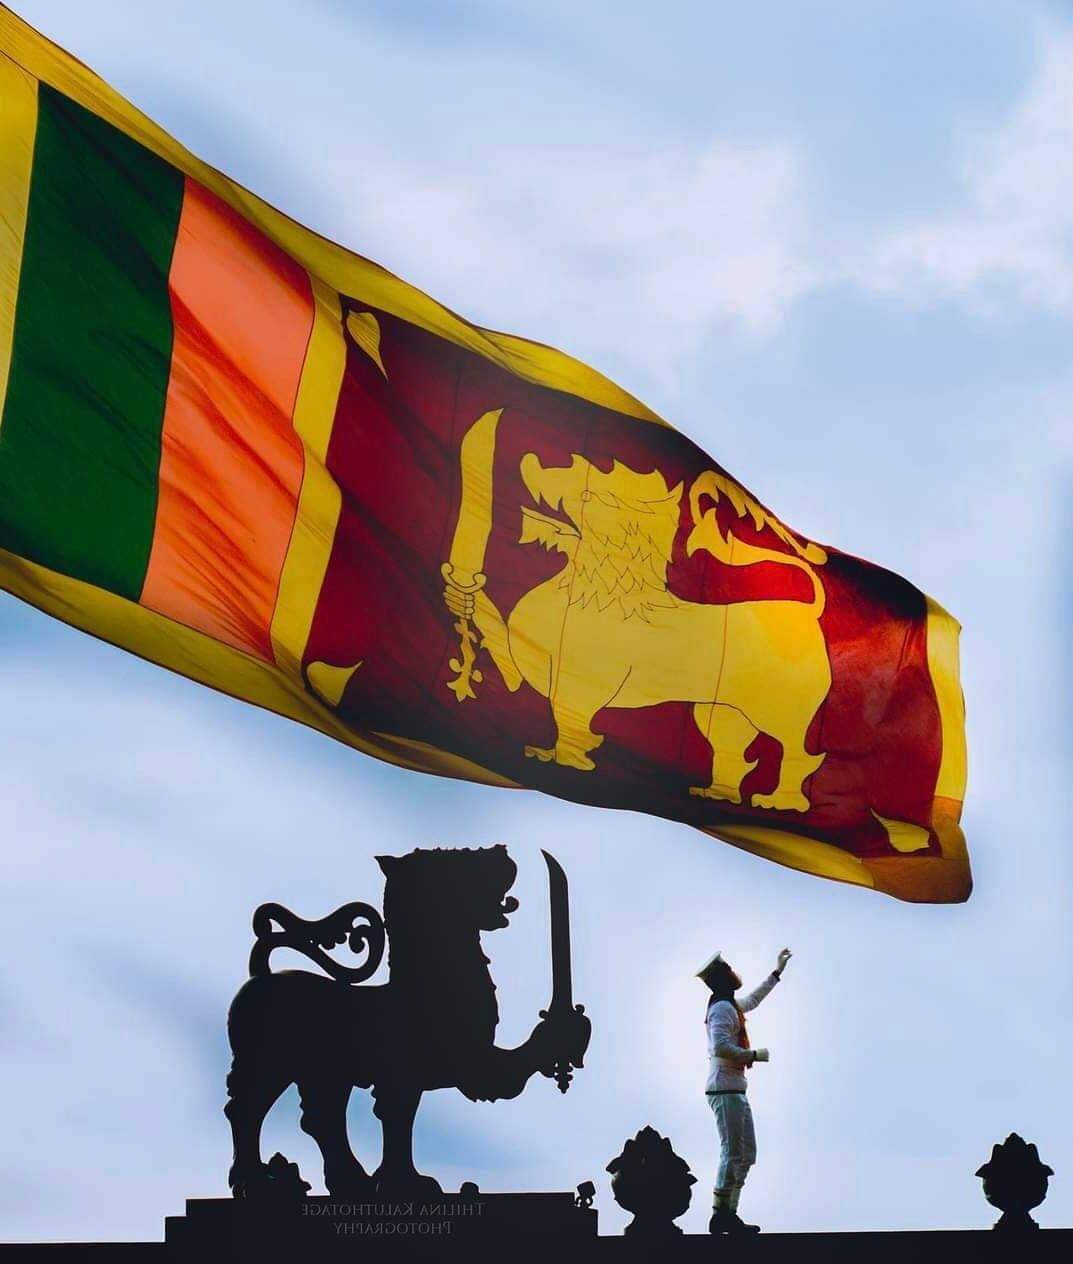 श्रीलंकाको नयाँ राष्ट्रपतिका लागि आज मनोनयन दर्ता